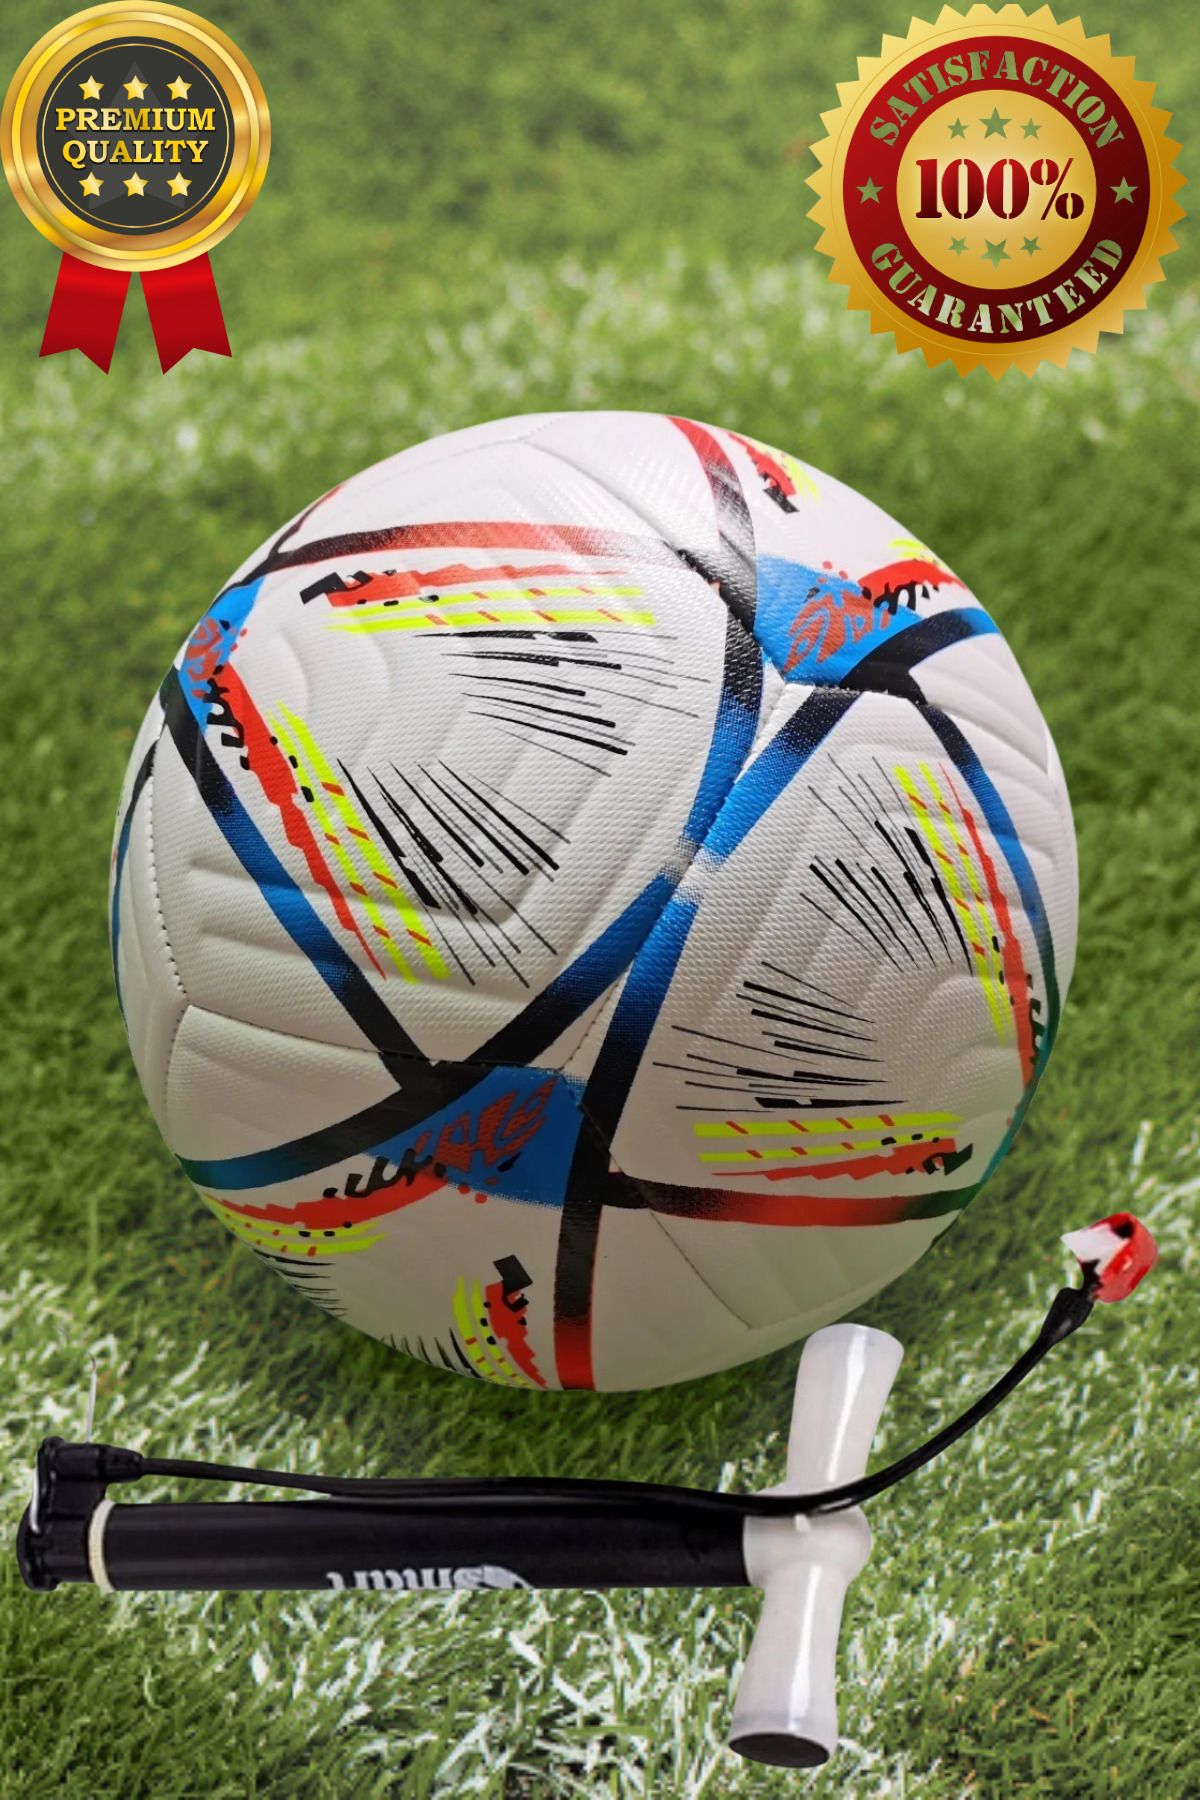 Janva Futbol Topu Dünya Kupası Özel Tasarım. 1.kalite Profosyonel Top Halı Saha Çim Saha Sporcu (420 Gram)